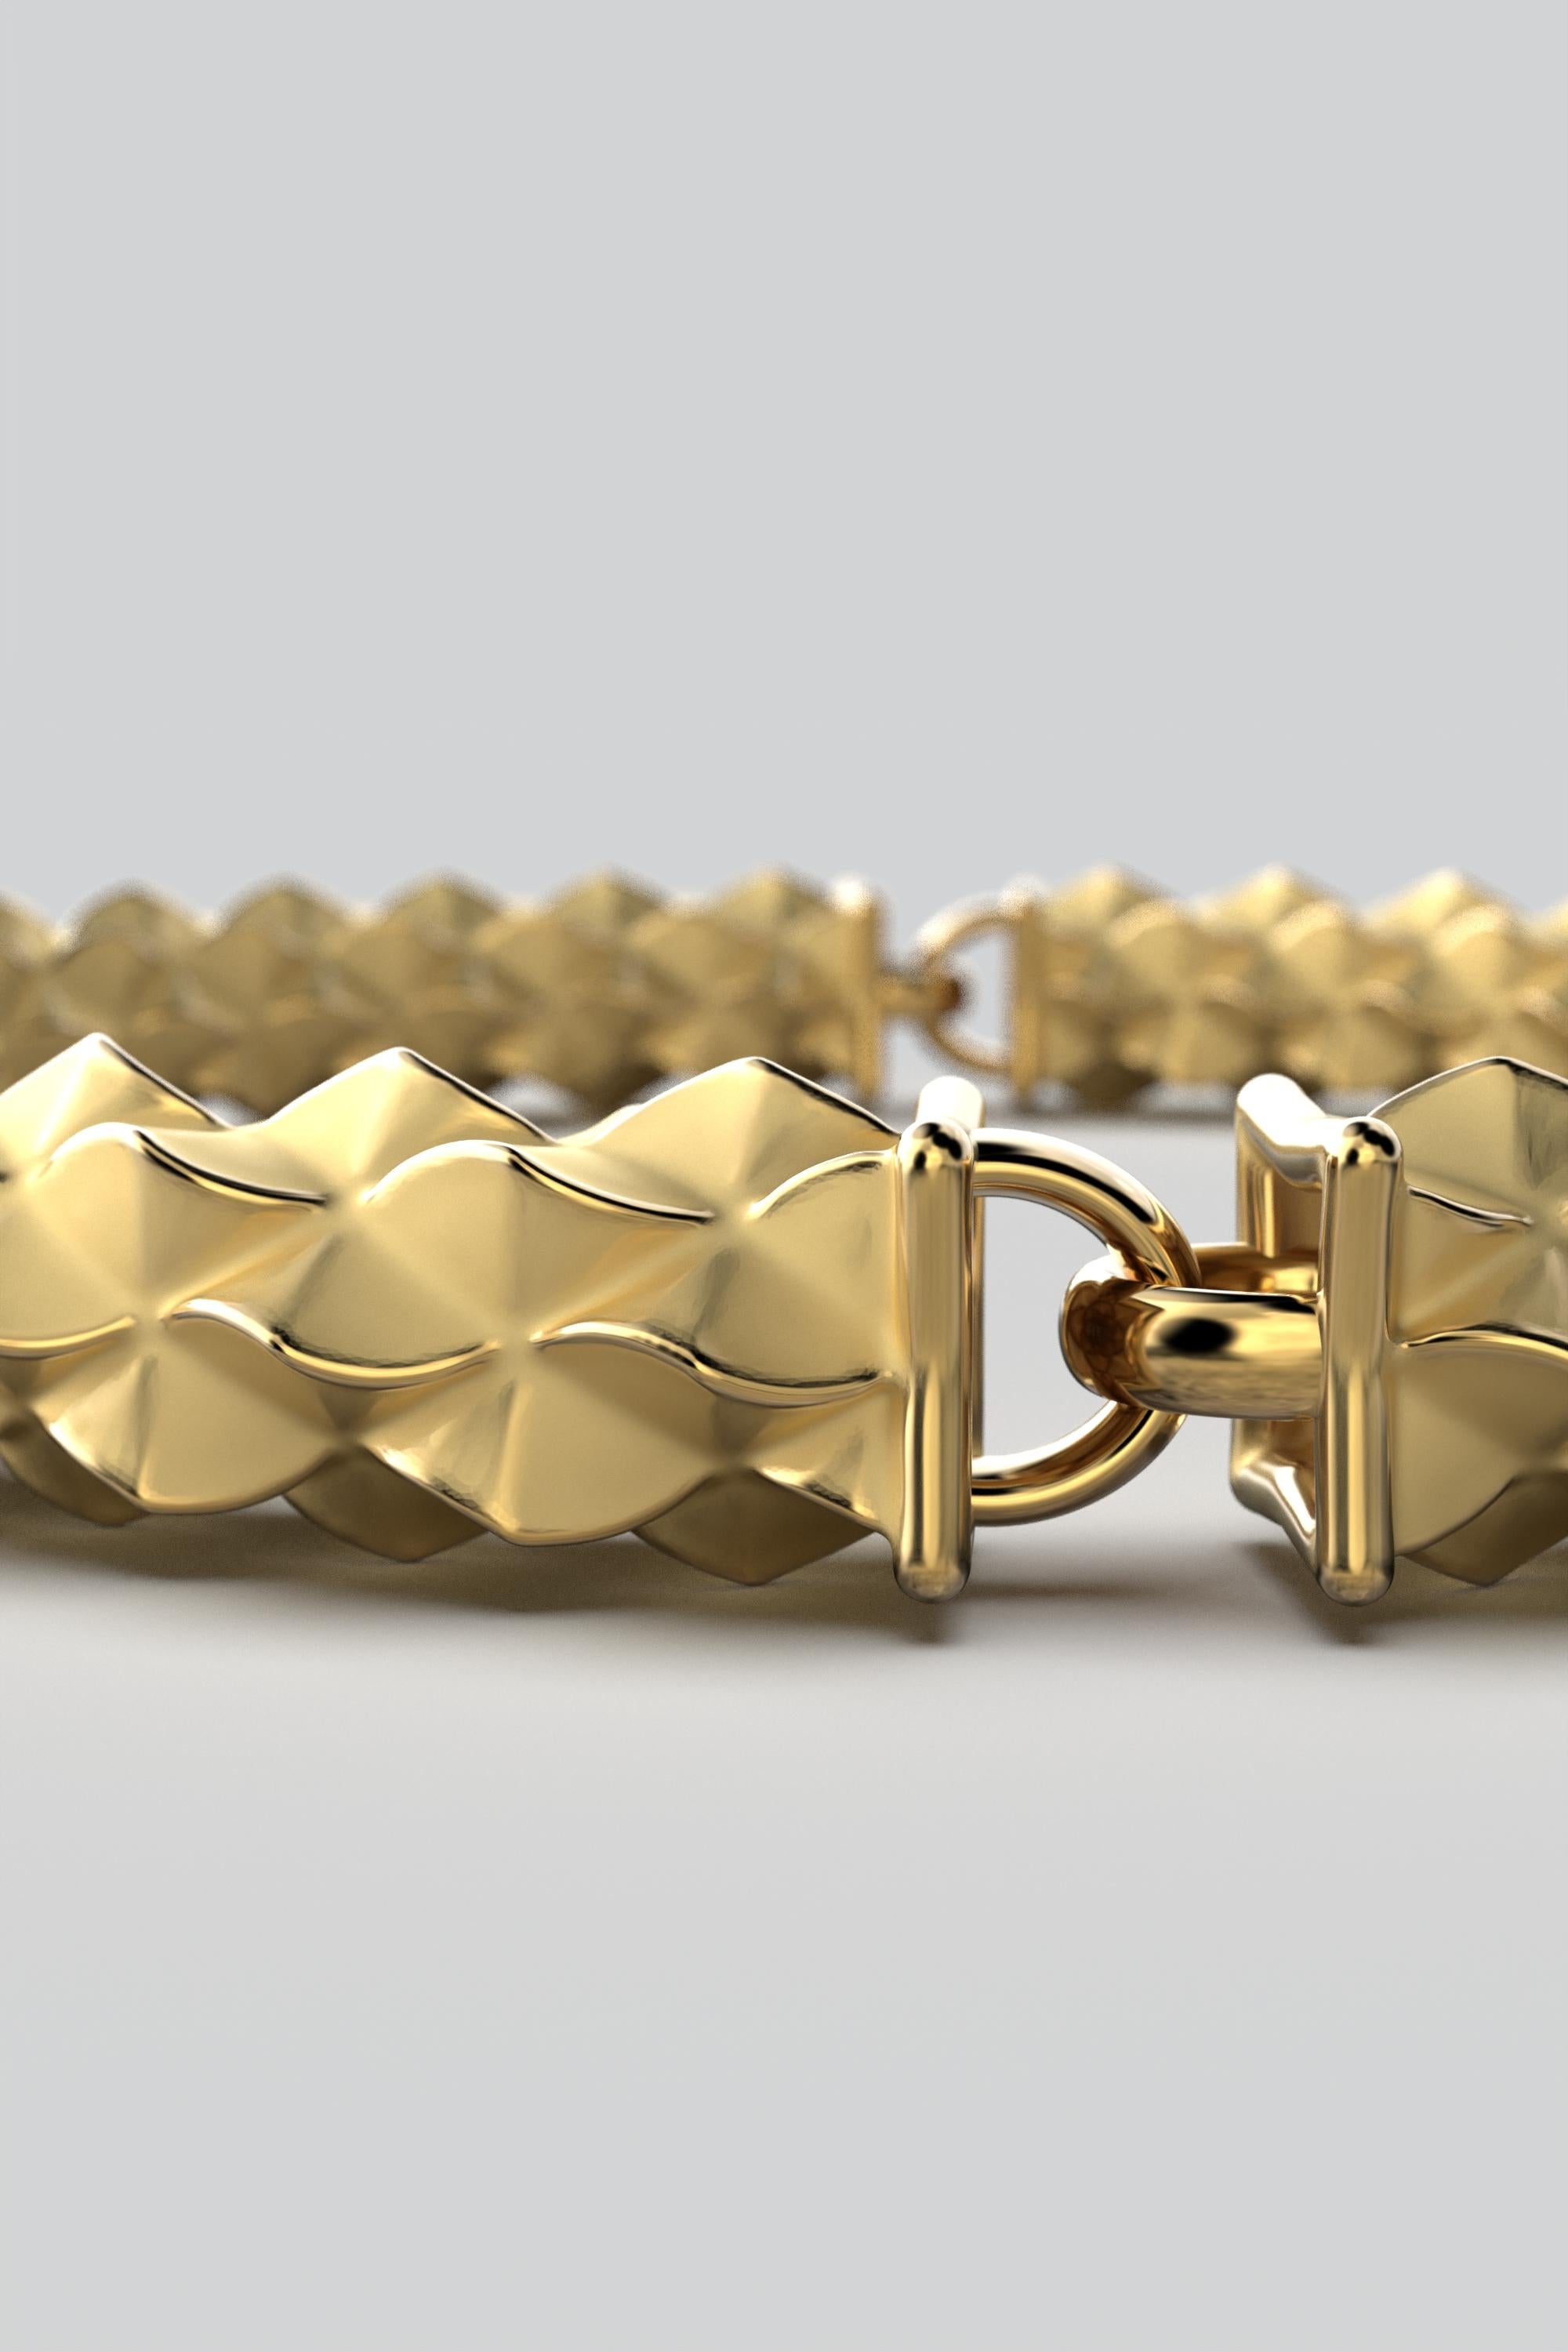 Contemporary 14k Italian Gold Link Bracelet: Custom Semi-Rigid Design by Oltremare Gioielli For Sale